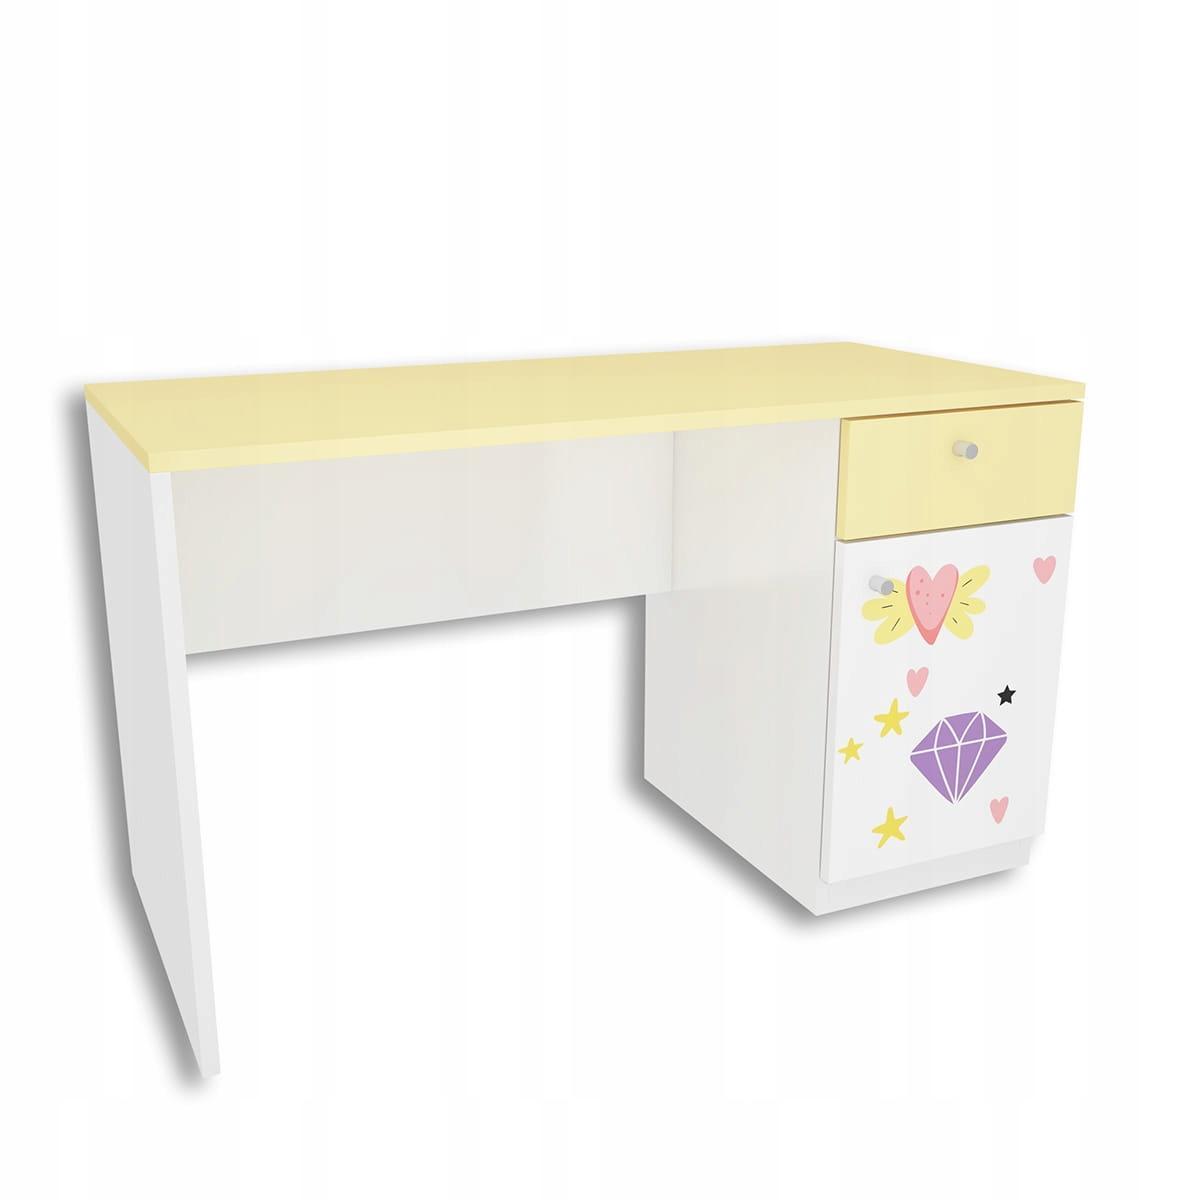 Zestaw 4 szt mebli DIAMOND biało żółte szafa, biurko, 2 szafki wiszące z jednorożcem dla dziecka  2 Full Screen